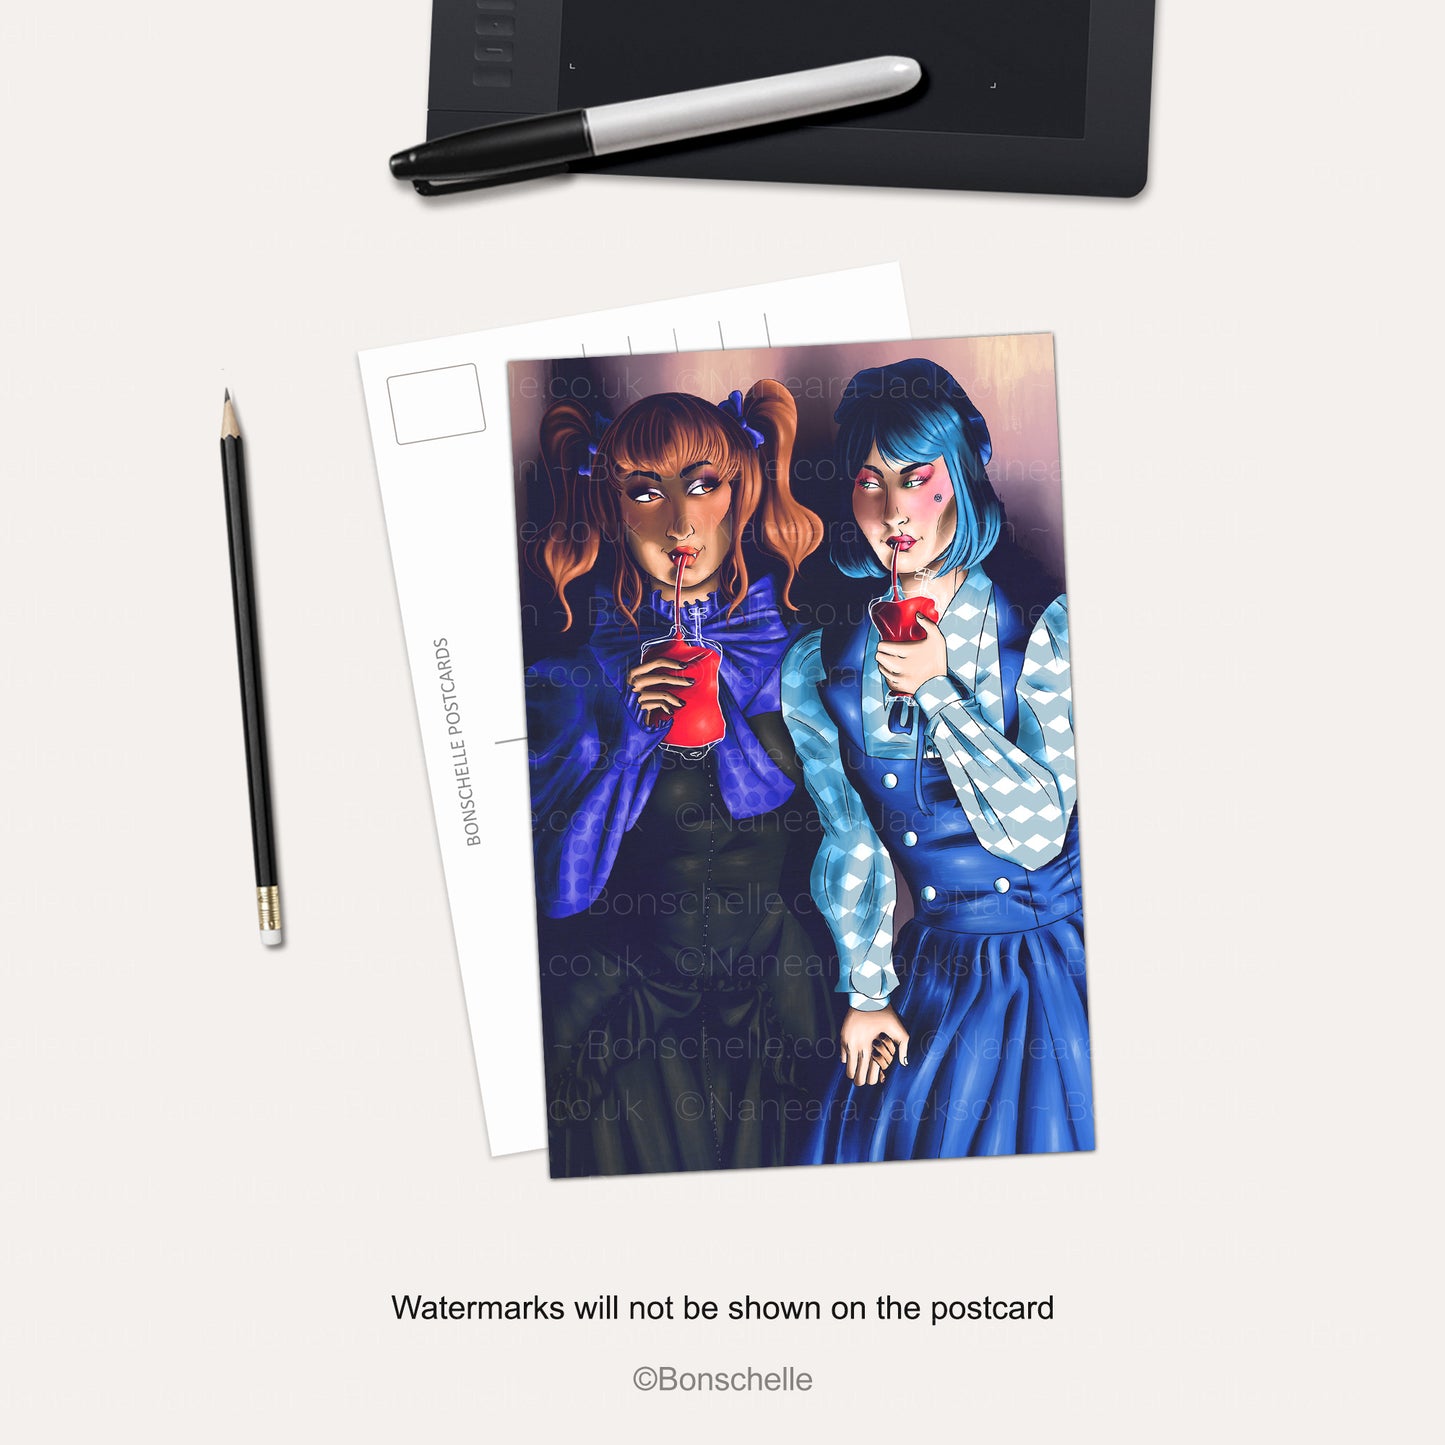 Vampire Lolita Girlfriends Postcard Art Print on a desk